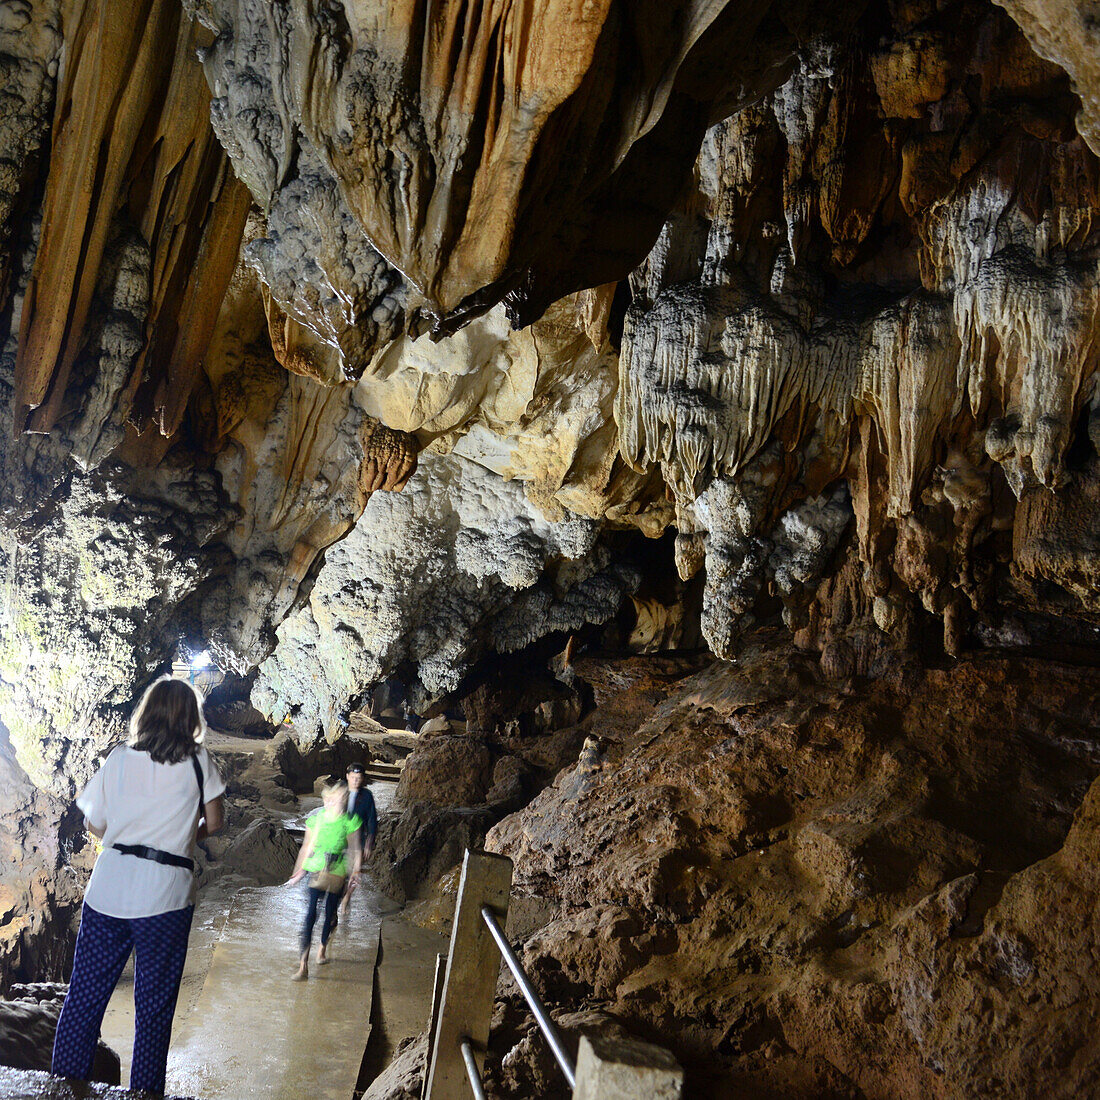 Tham Chiang Dao cave at Chiang Dao, North-Thailand, Thailand